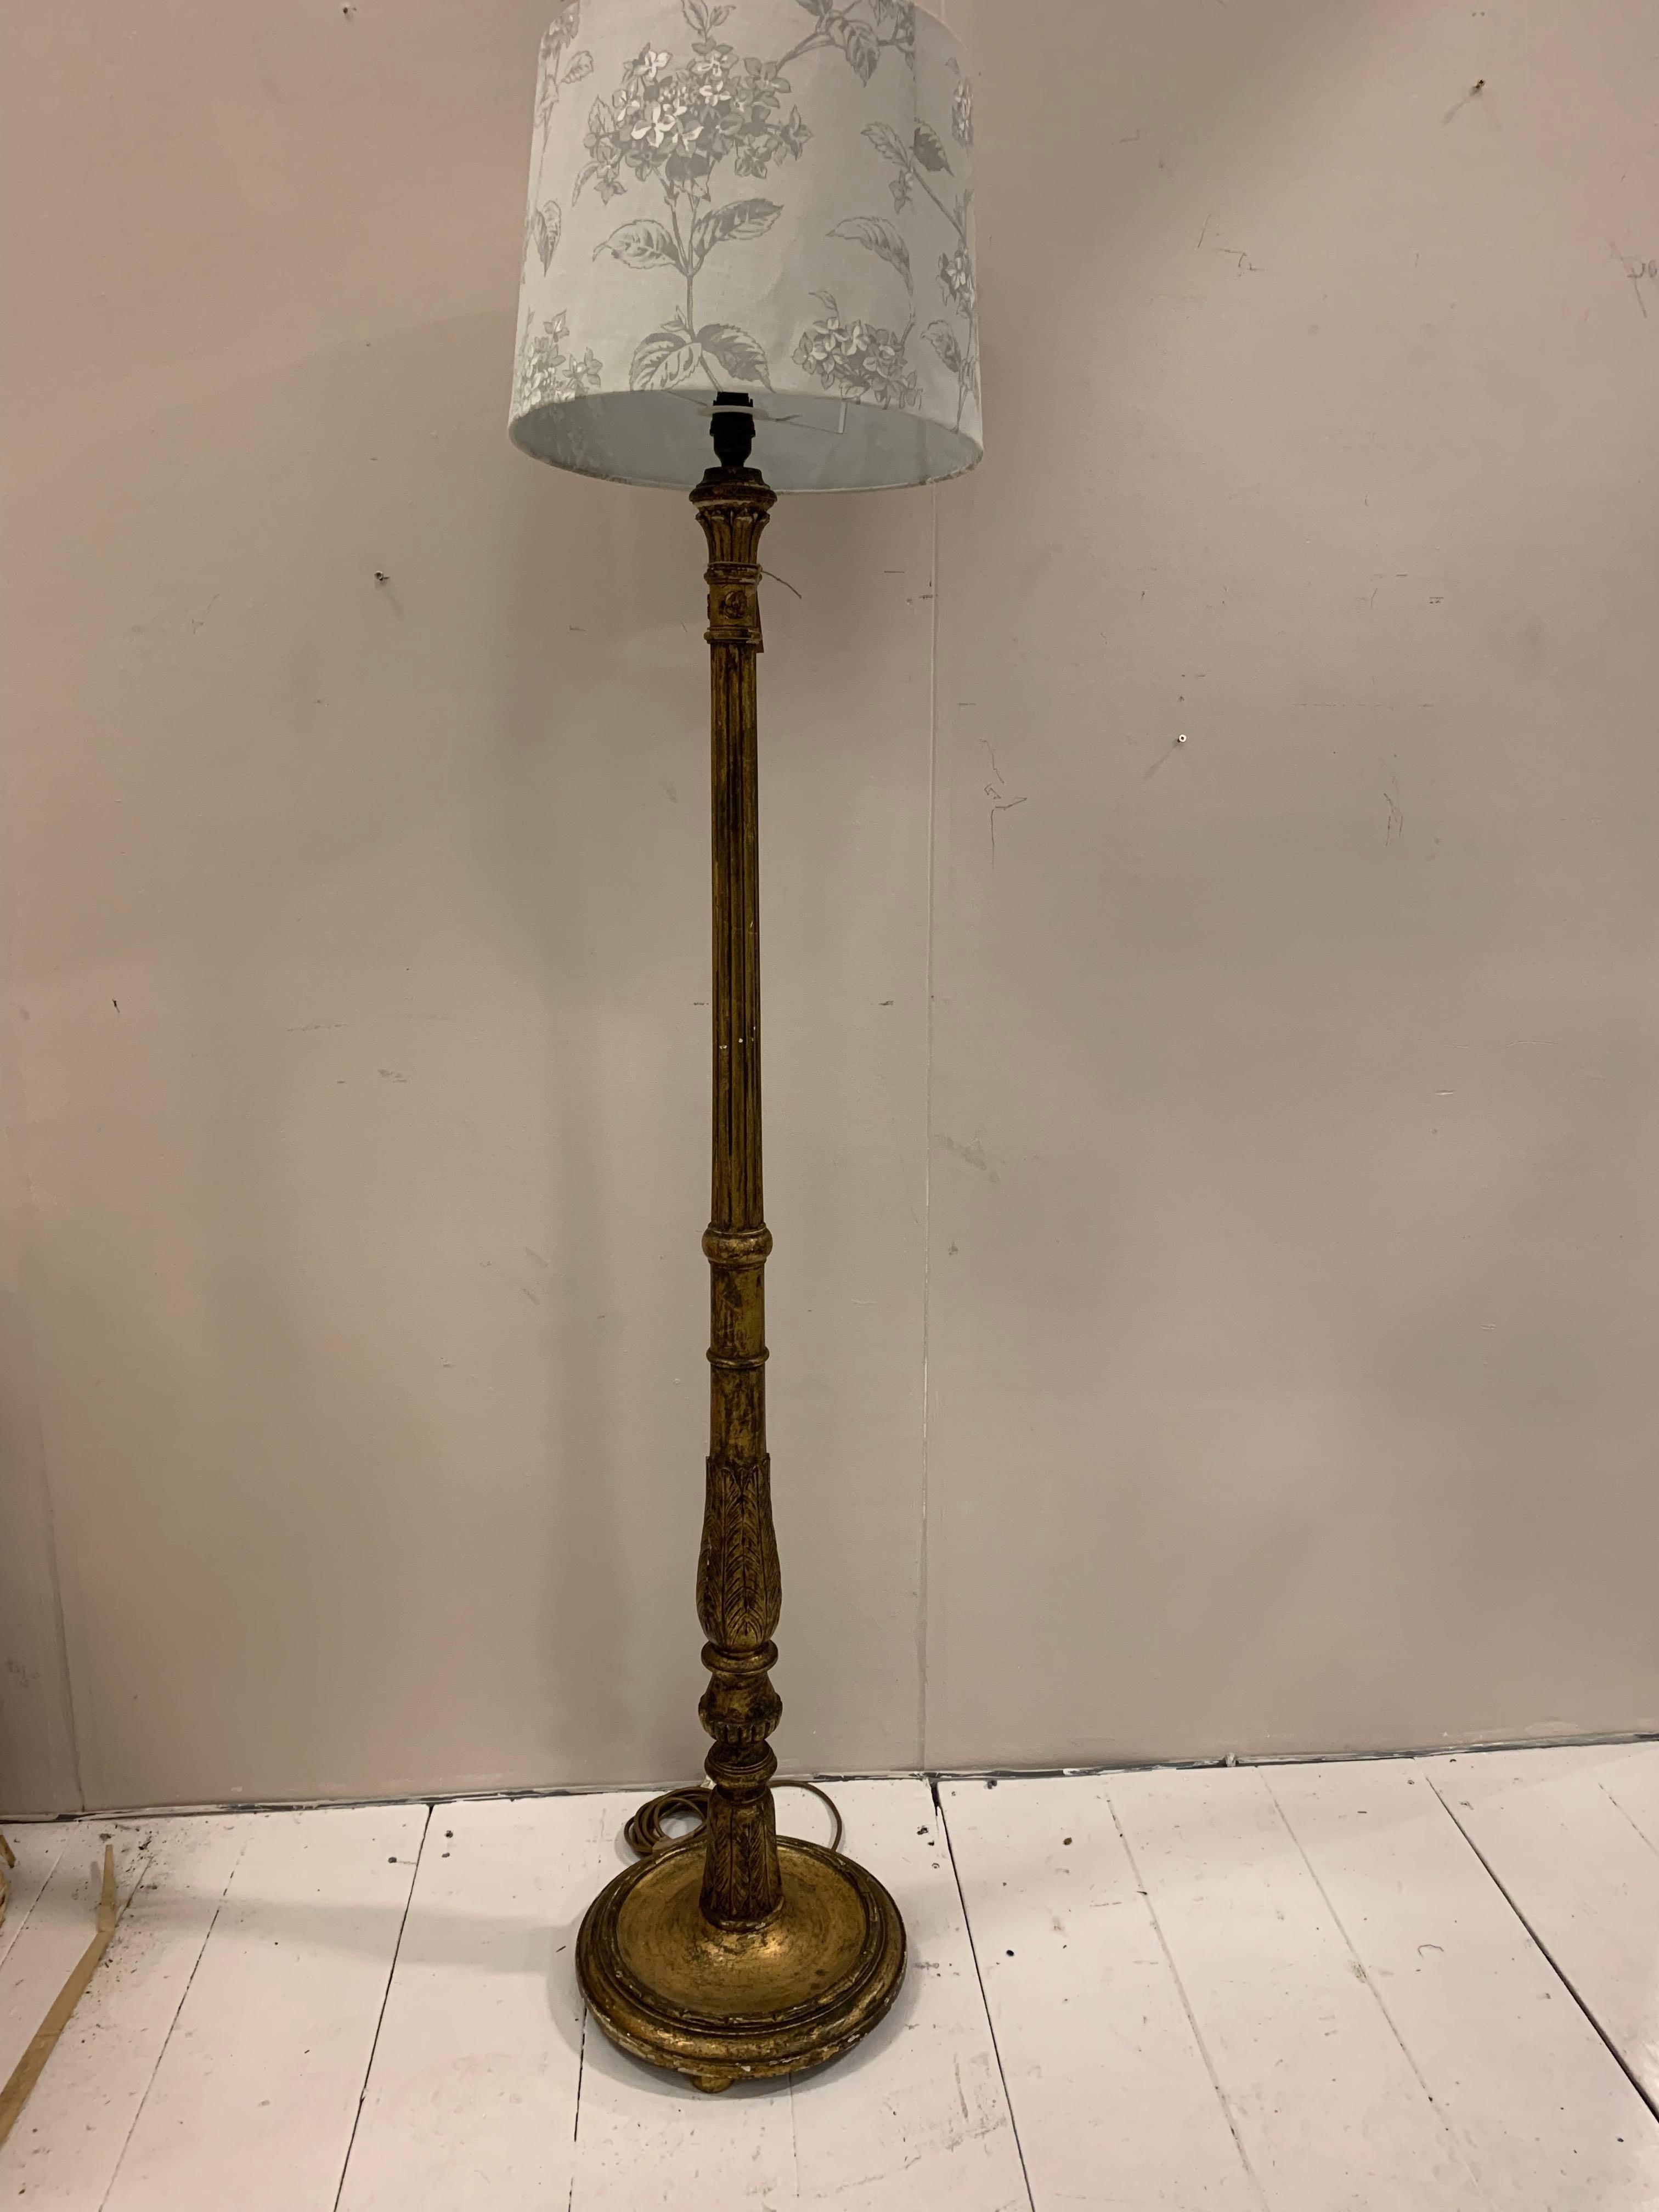 Lampe standard inhabituelle et décorative datant des années 1930, avec décoration de fleurs en plâtre.
Testé par Pat selon les normes britanniques

L'abat-jour n'est pas inclus 